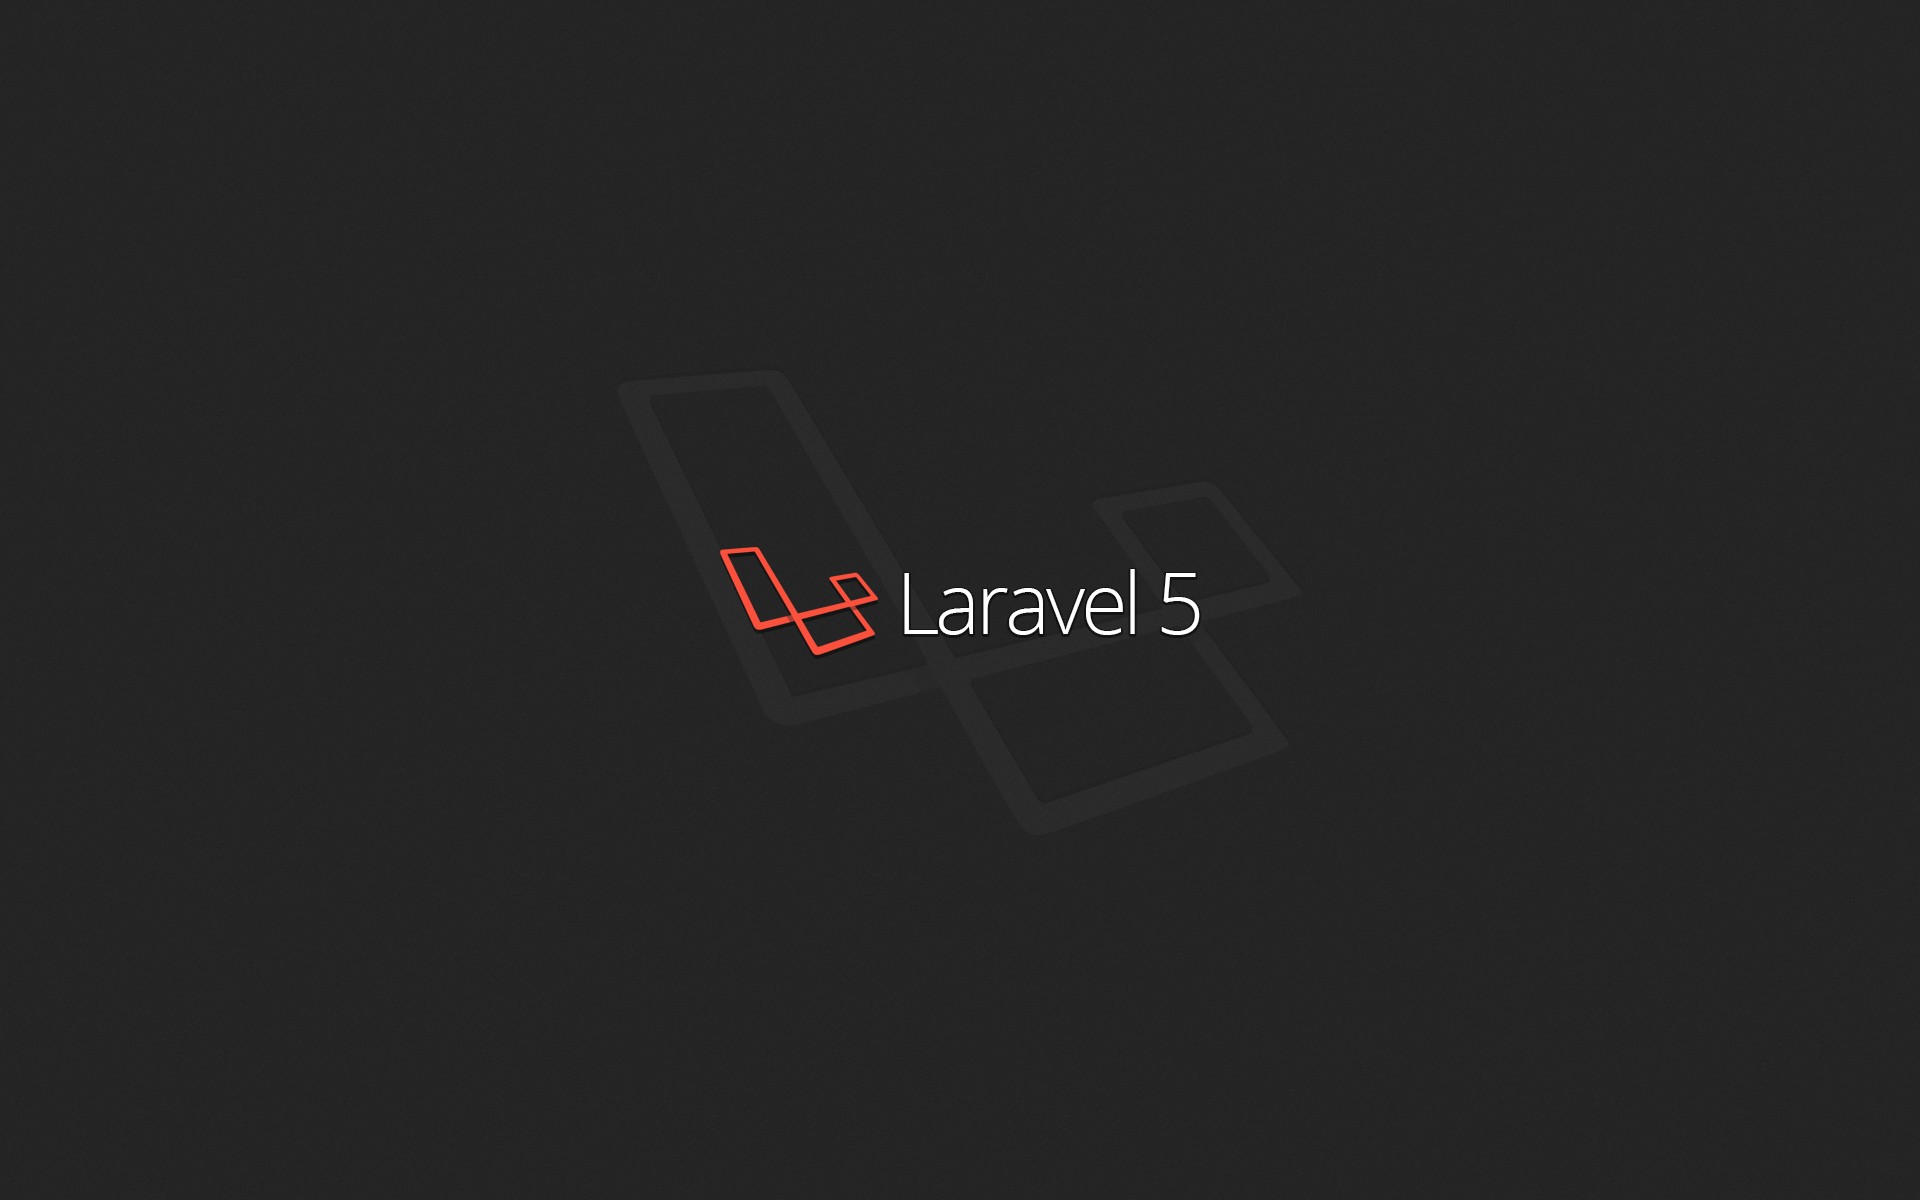 Hình nền Laravel lập trình: Sáng tạo và hiện đại! Hình nền Laravel programming sẽ đem đến cho bạn một diện mạo mới mẻ để làm việc trên máy tính. Với nhiều kiểu dáng và hình ảnh độc đáo, bạn sẽ không thể rời mắt khỏi màn hình. Hãy xem ngay thôi nào!